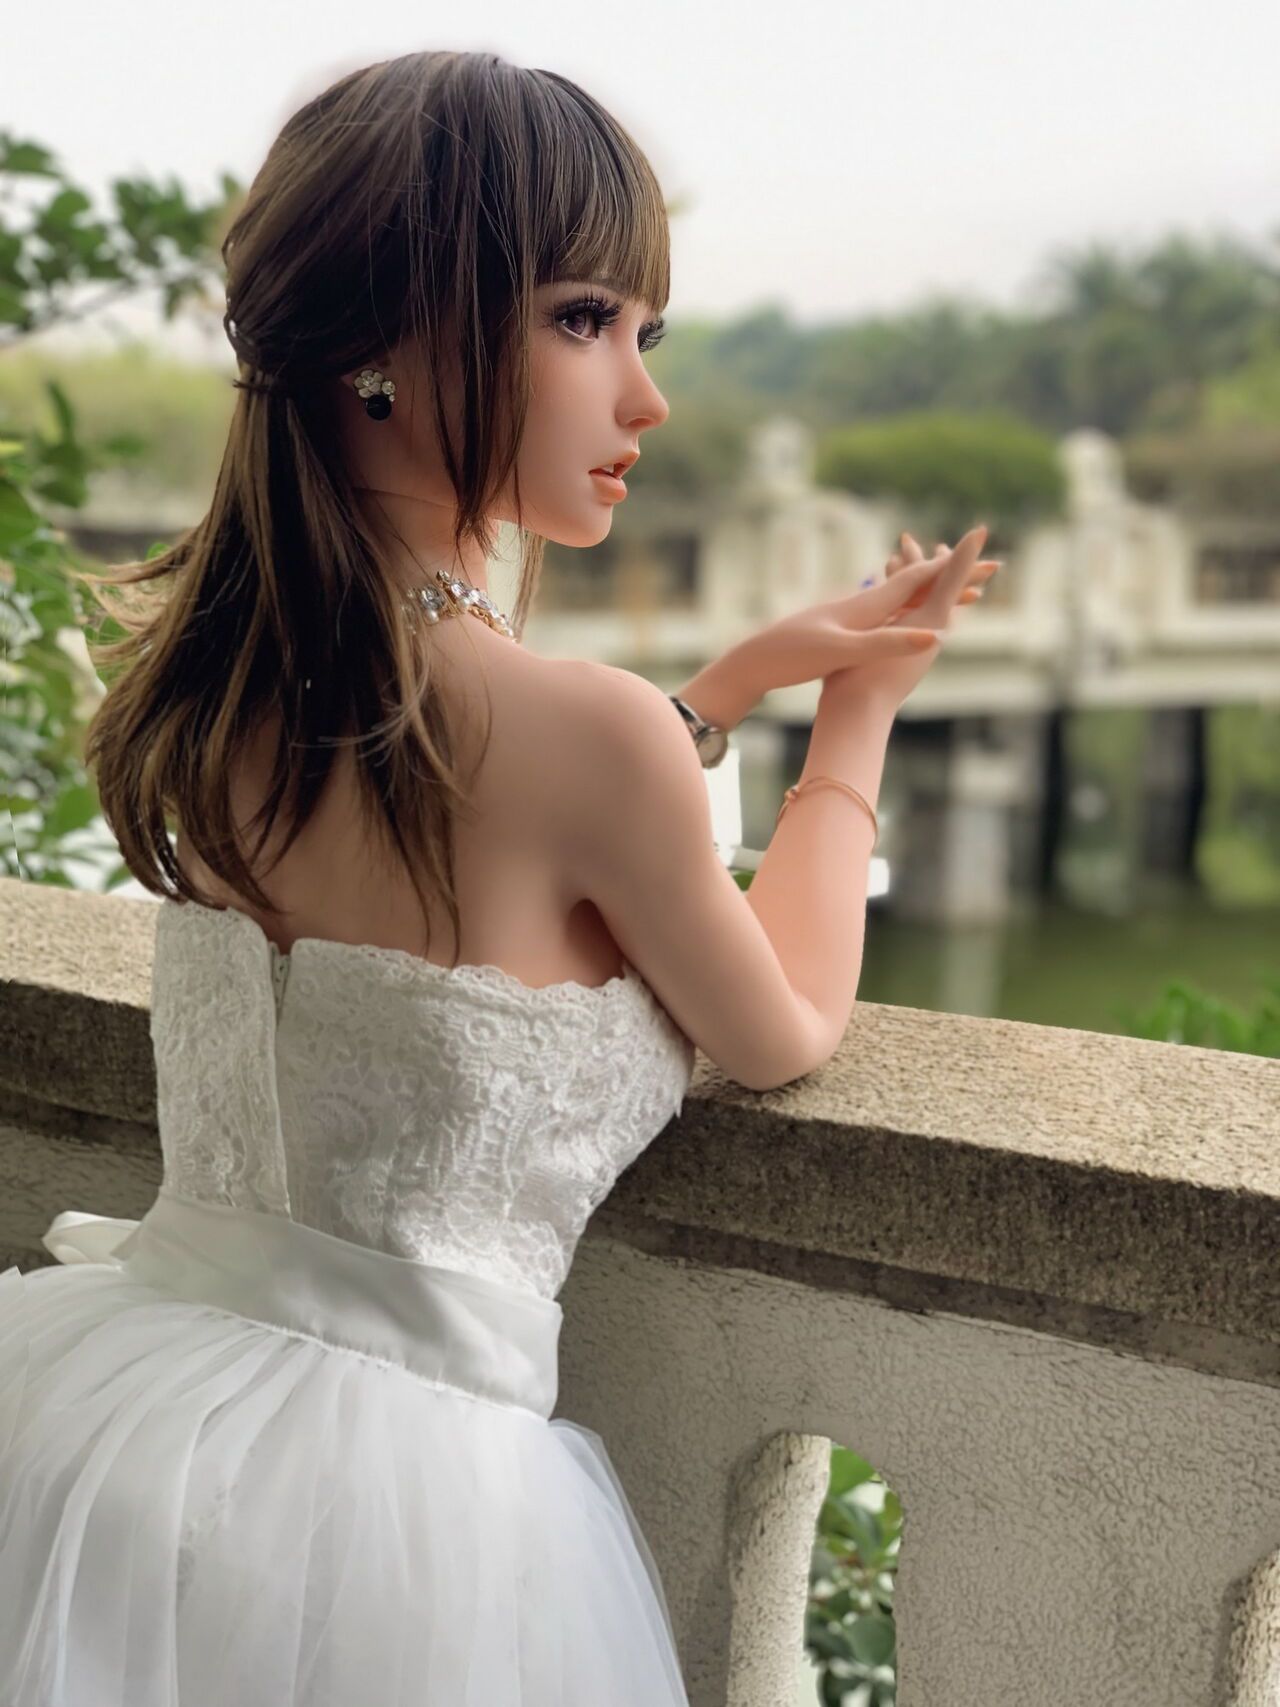 150CM HB031 Kurai Sakura-Bride in bud, to be married! by QIN 24